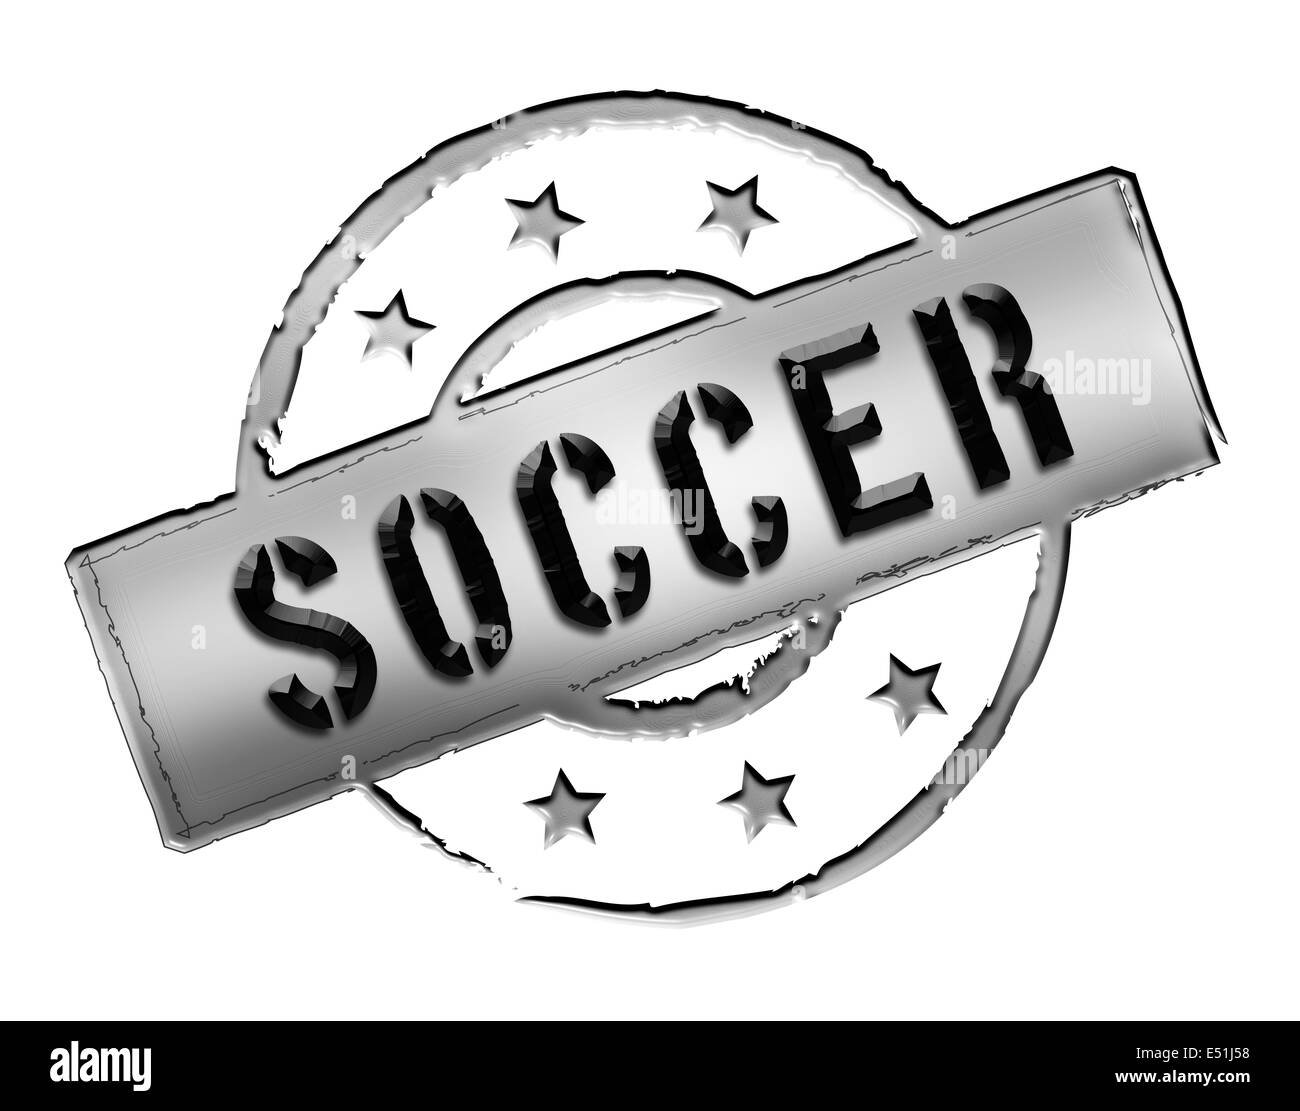 Stamp - soccer Stock Photo